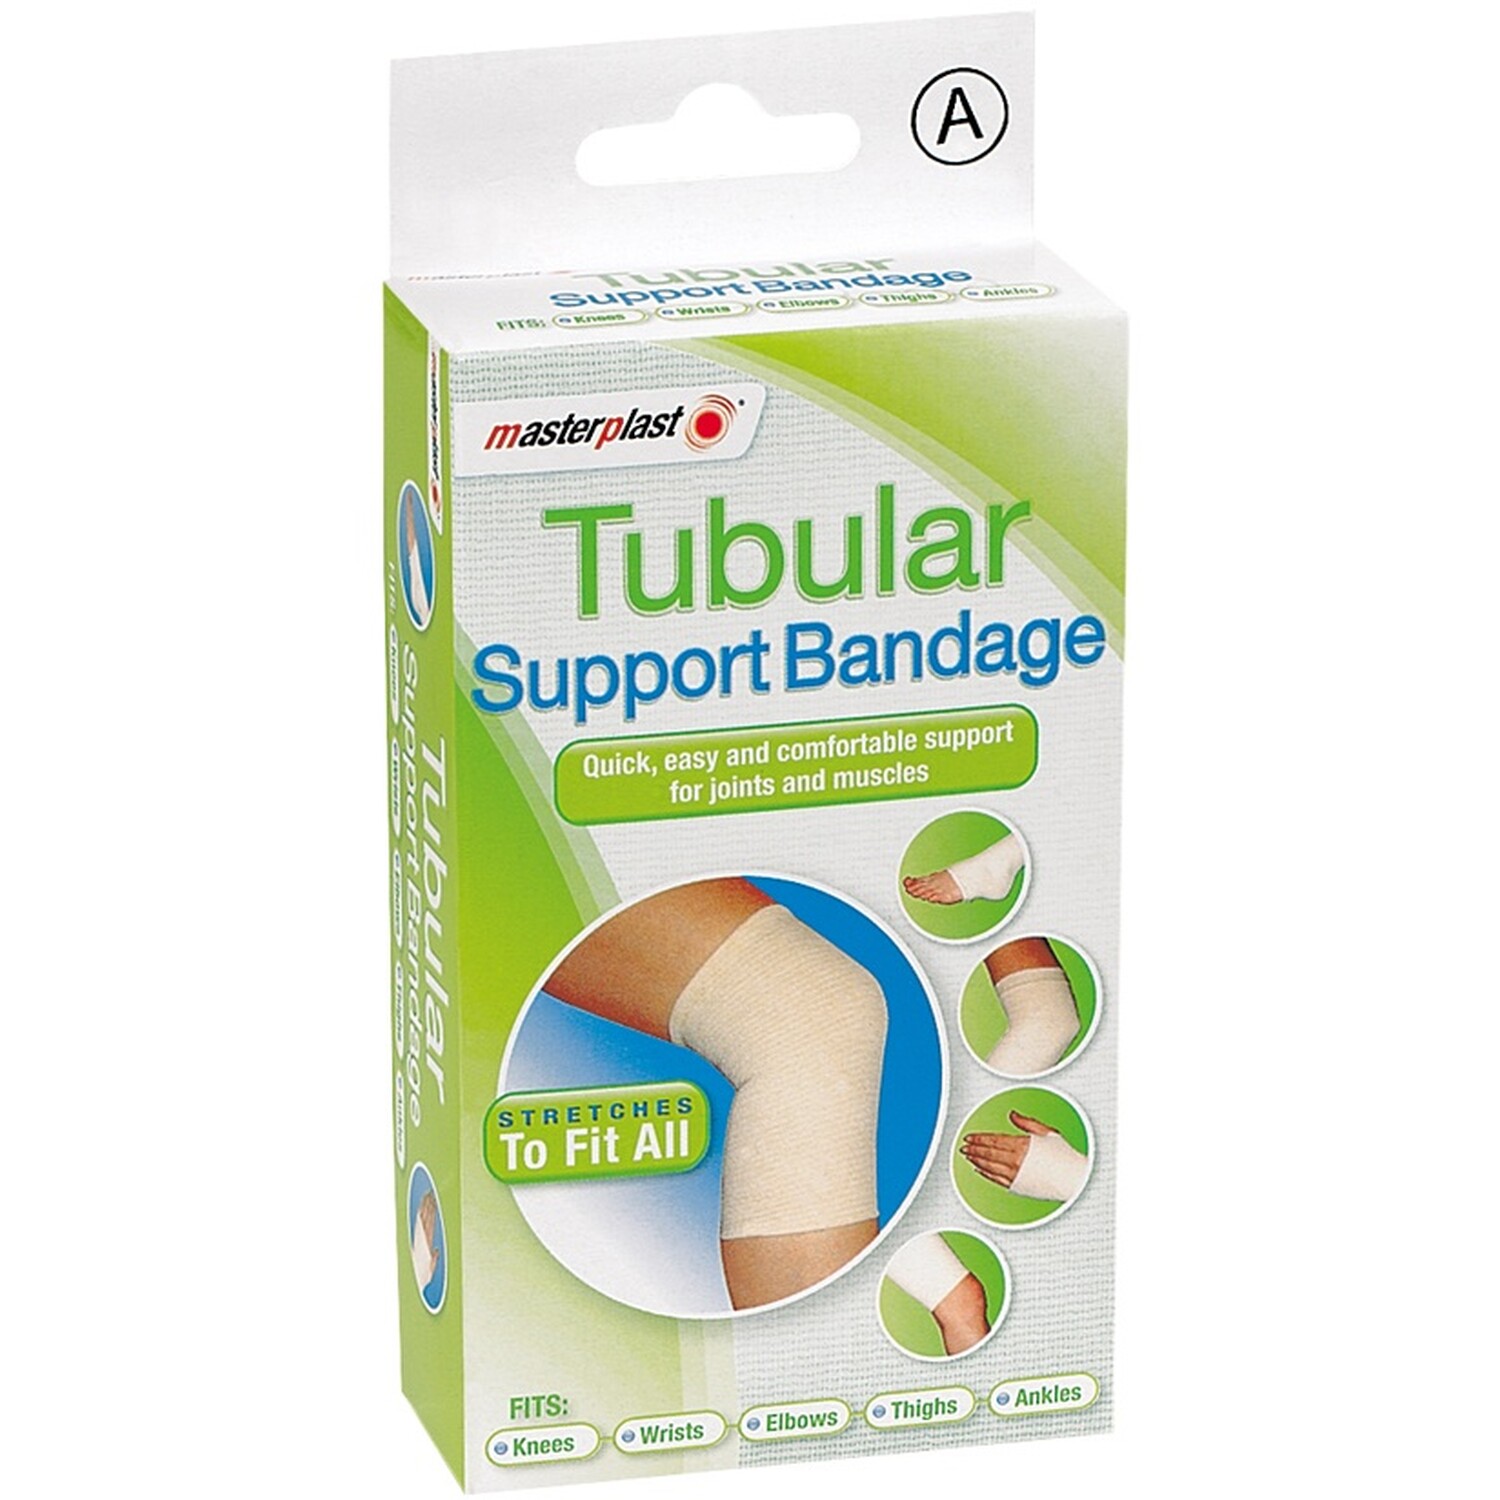 Masterplast Tubular Support Bandage Image